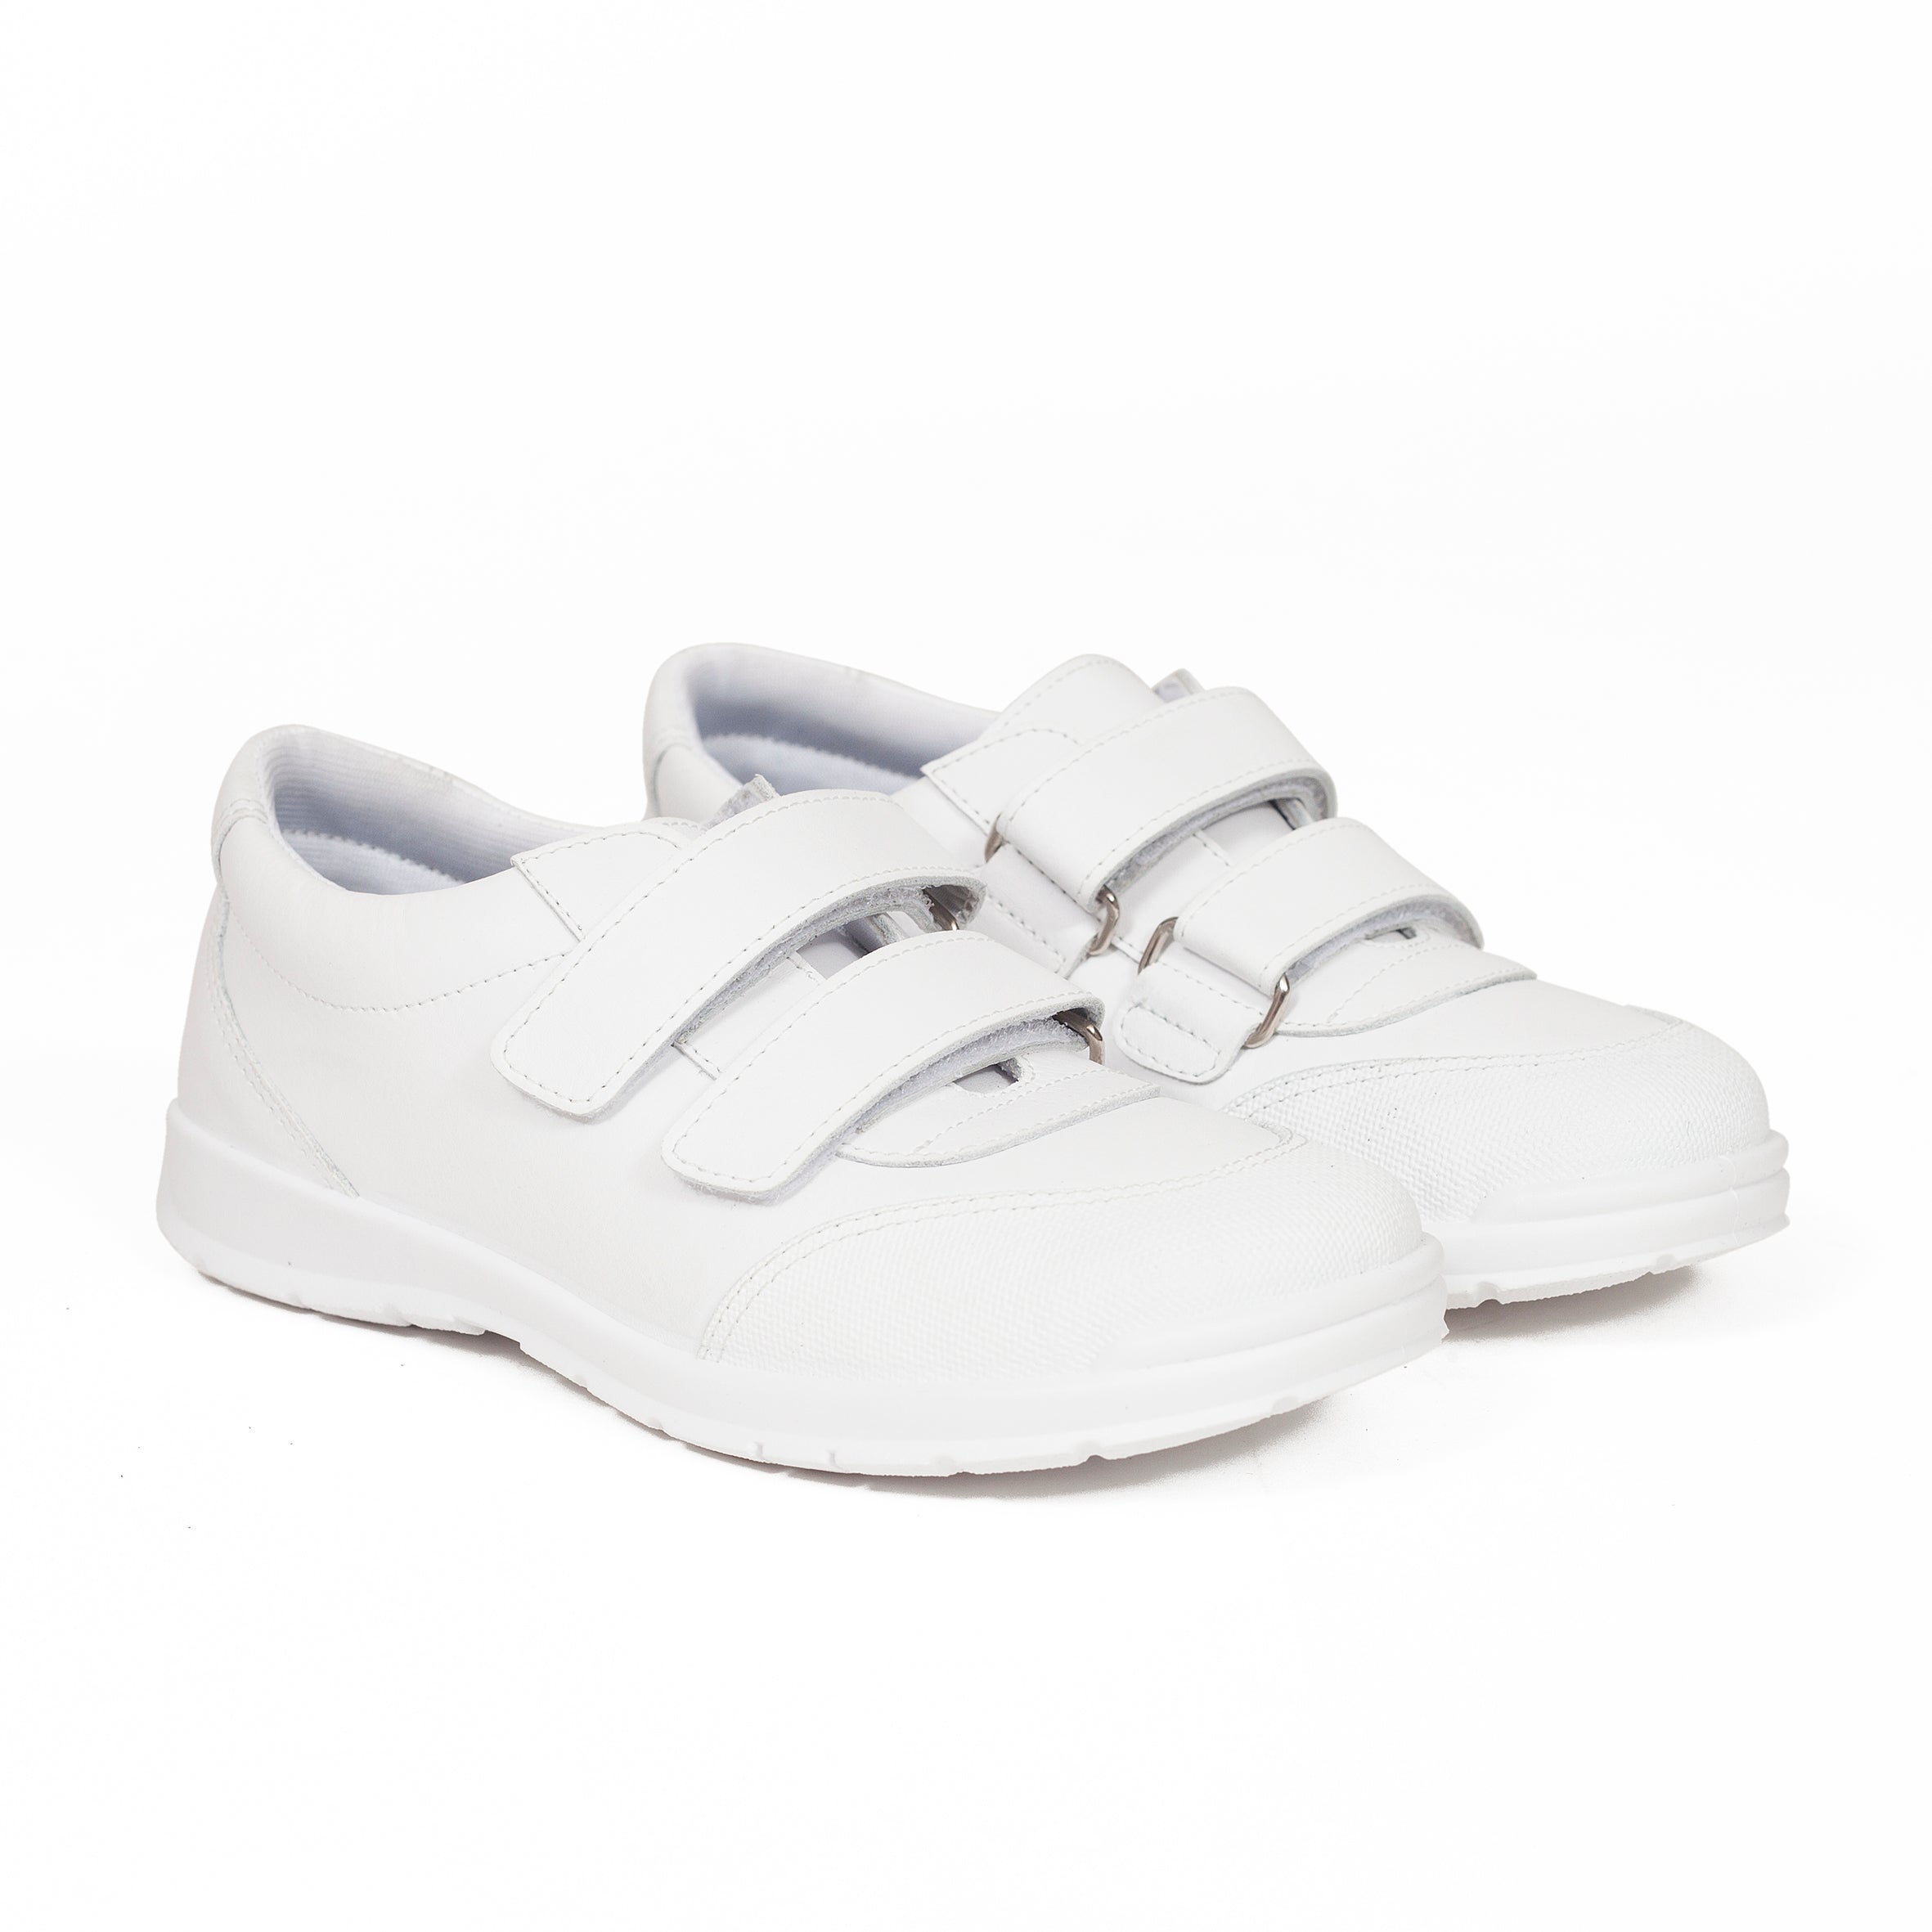 Zapatos colegiales de niña uniforme colegio – Piel Lavable marca miMaO